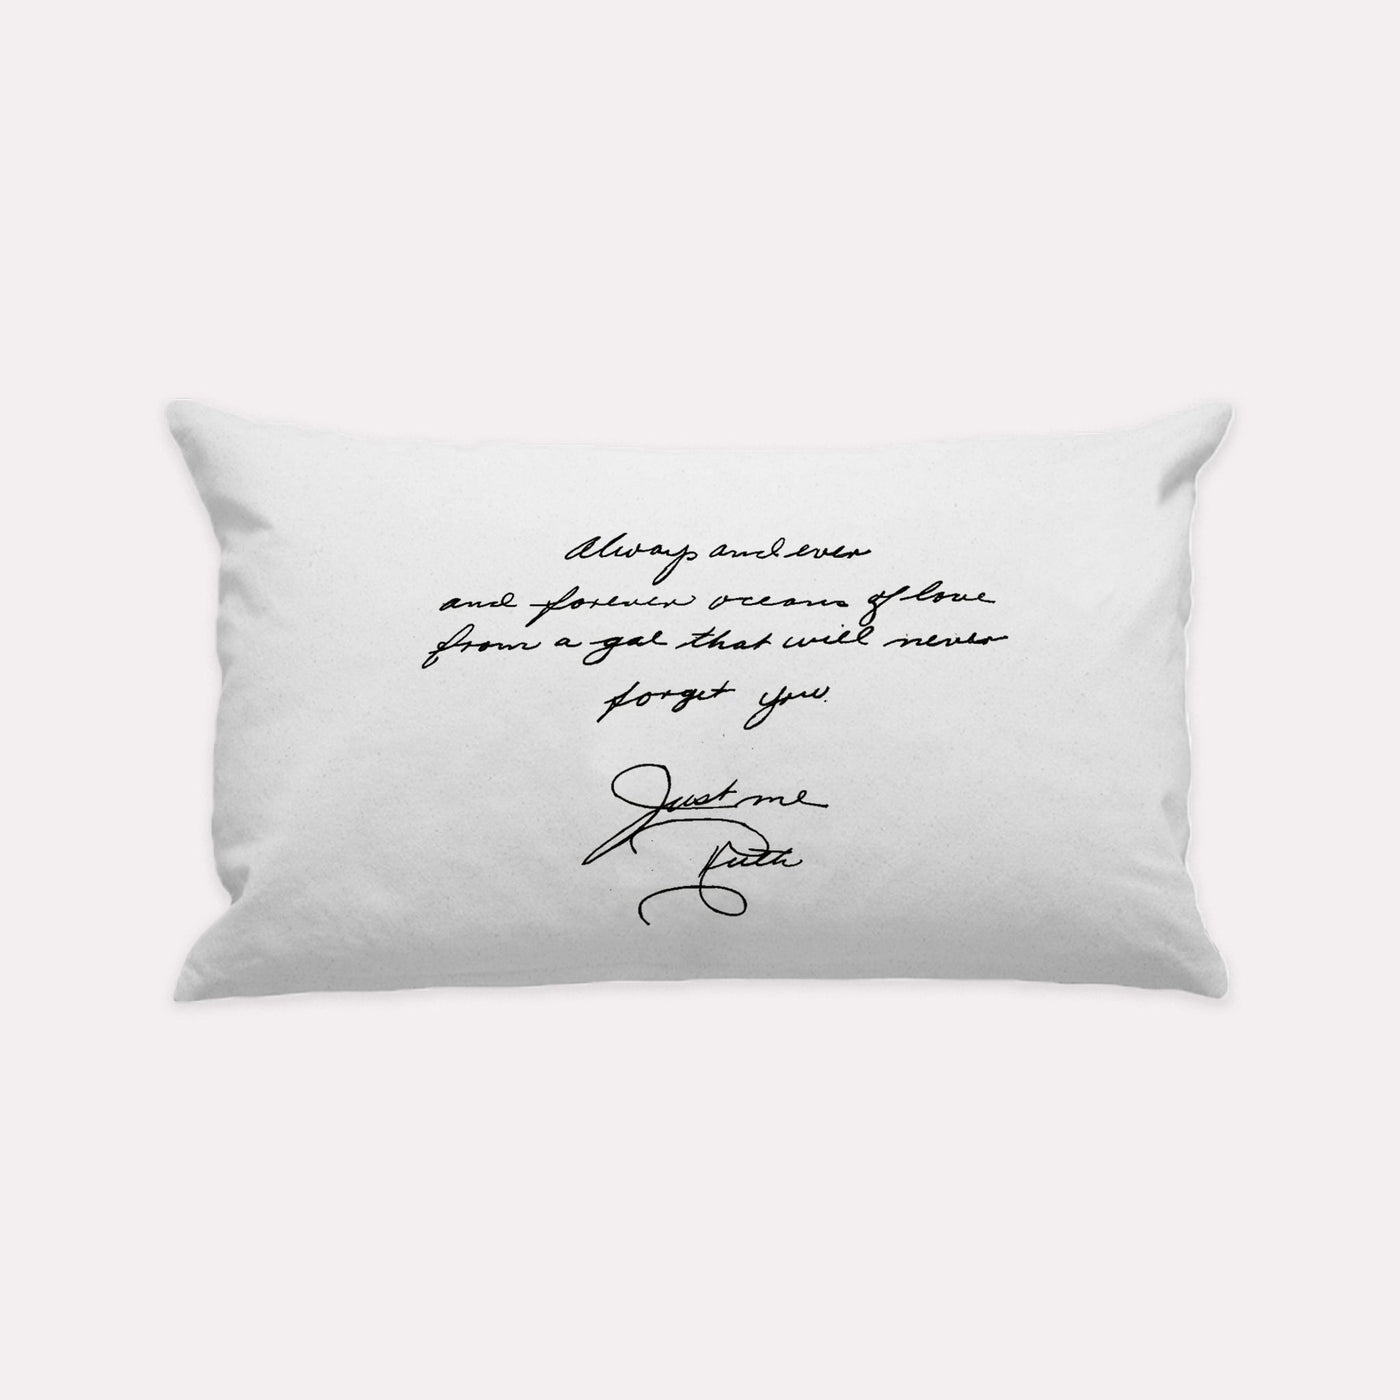 White Custom Handwritten Letter Lumbar Pillow - The Printed Gift